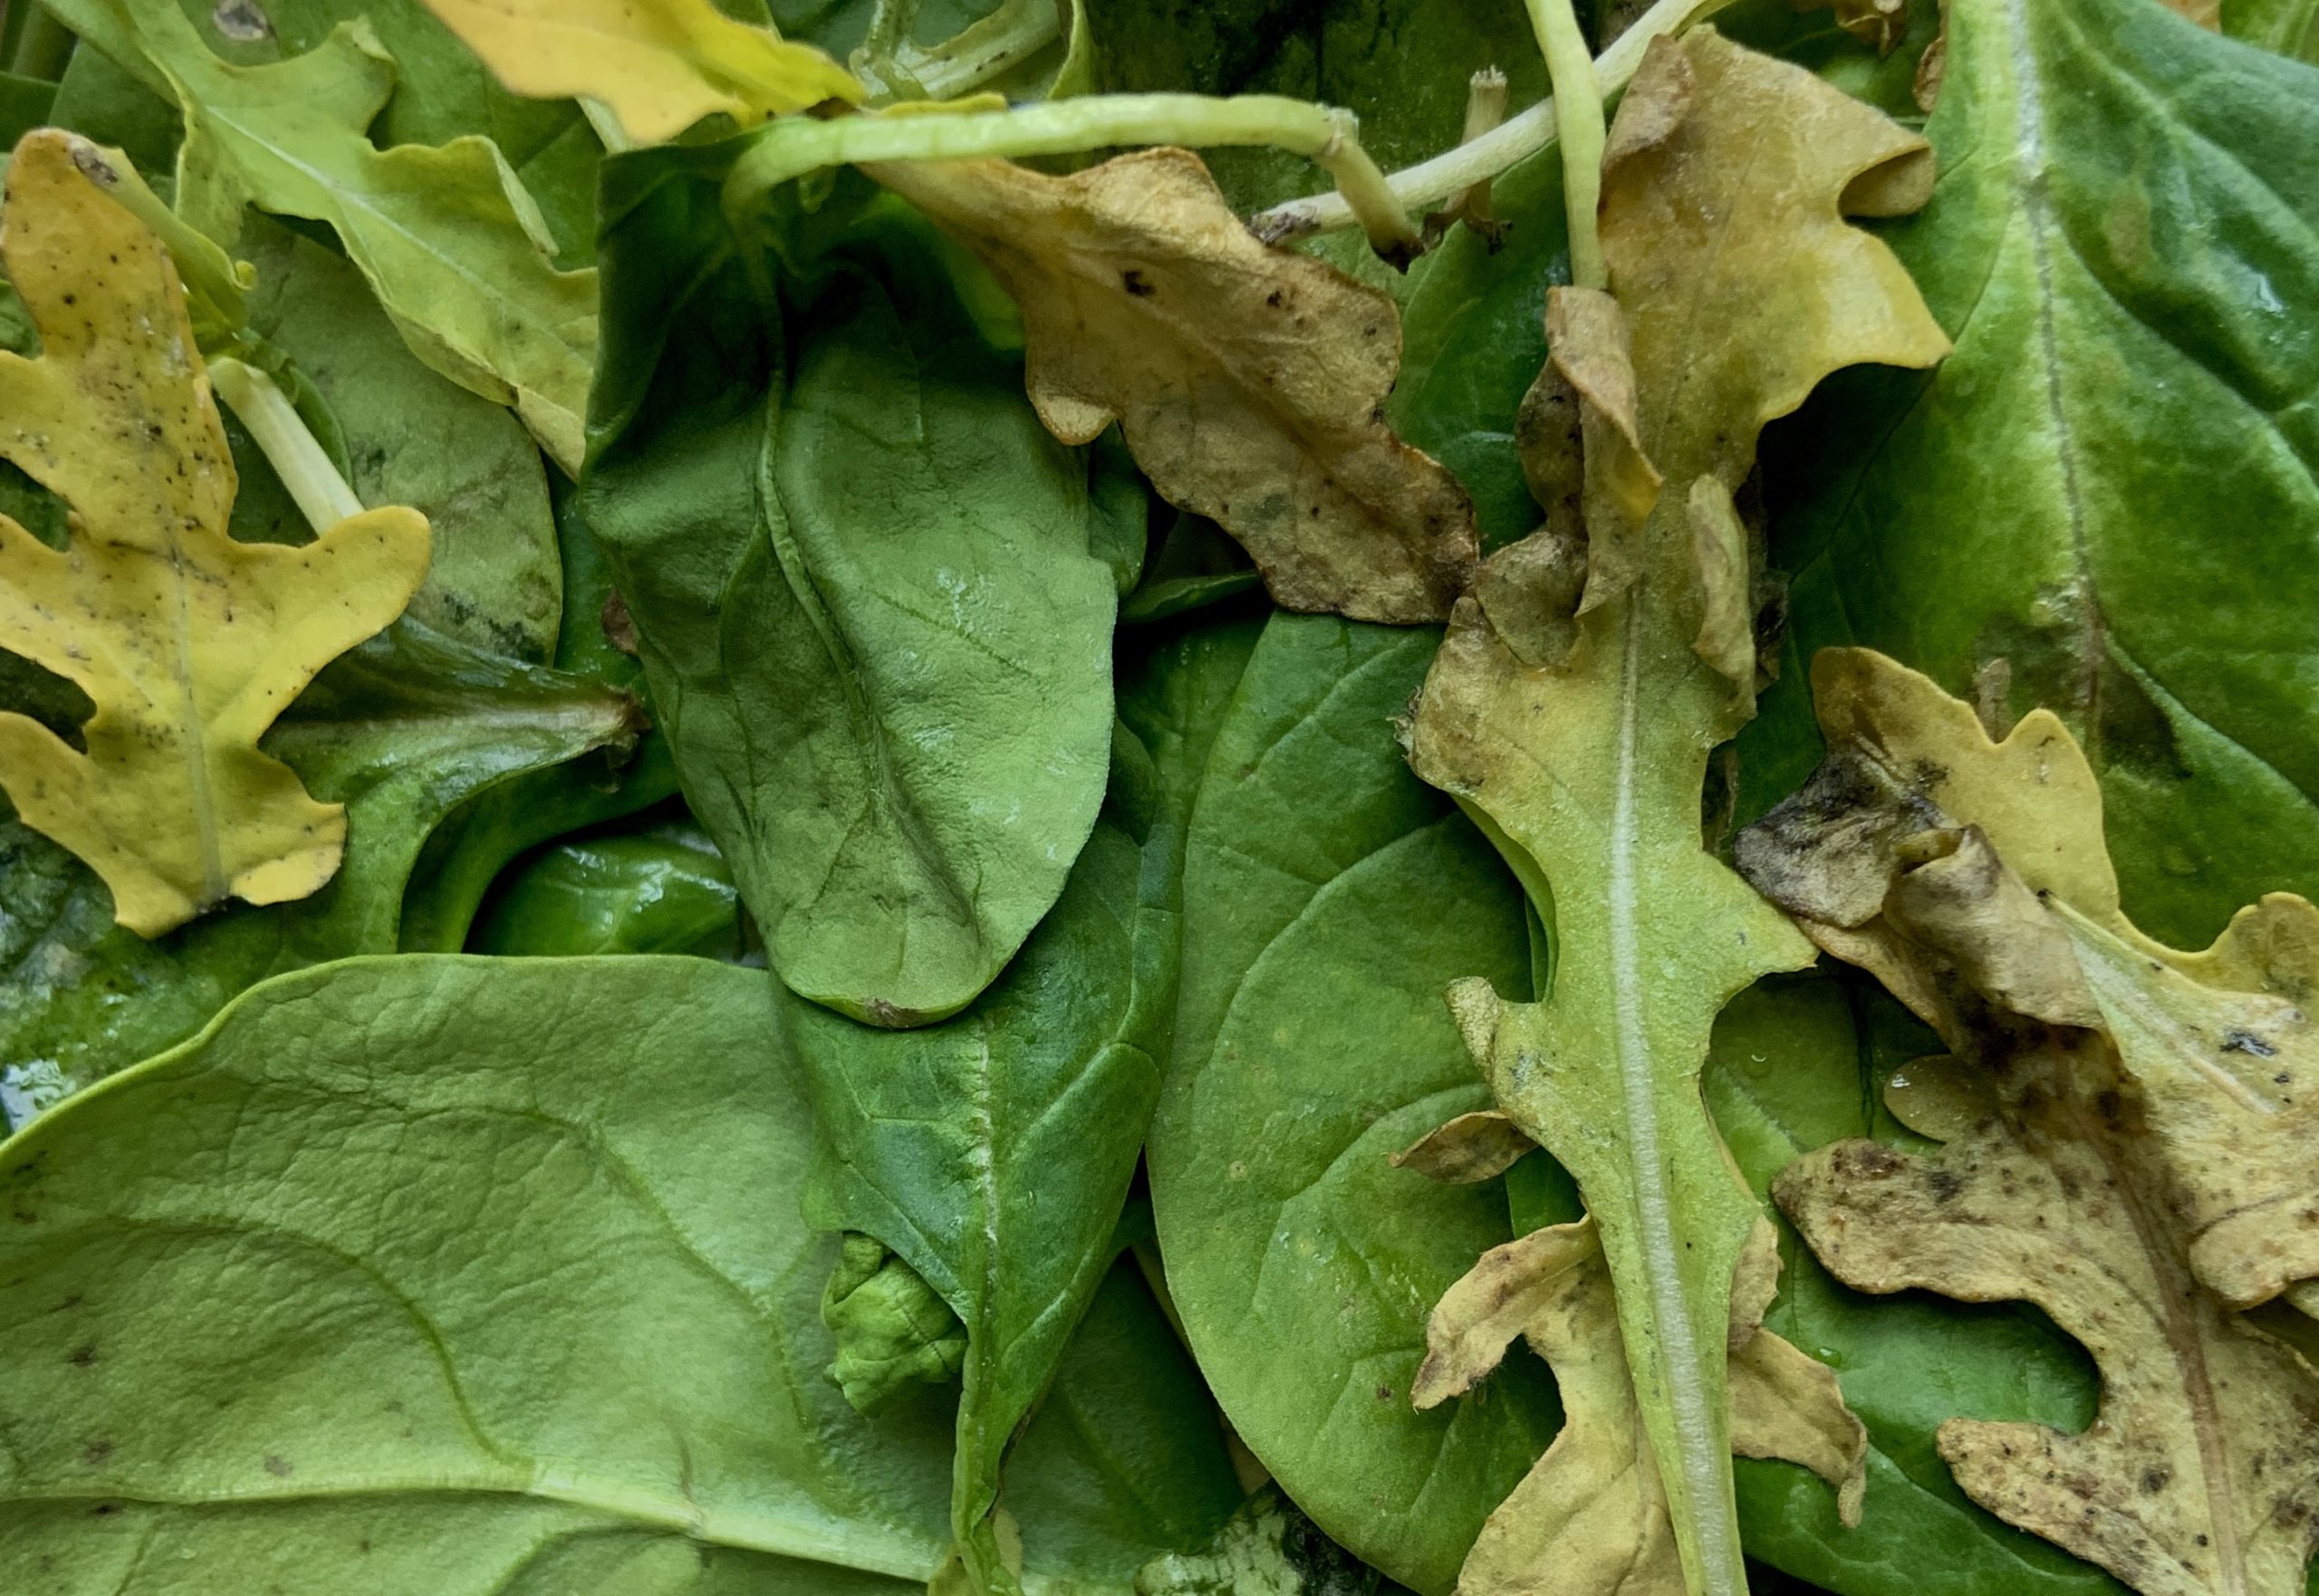 Moldy Leafy Greens Cladosporium | Moldy Food